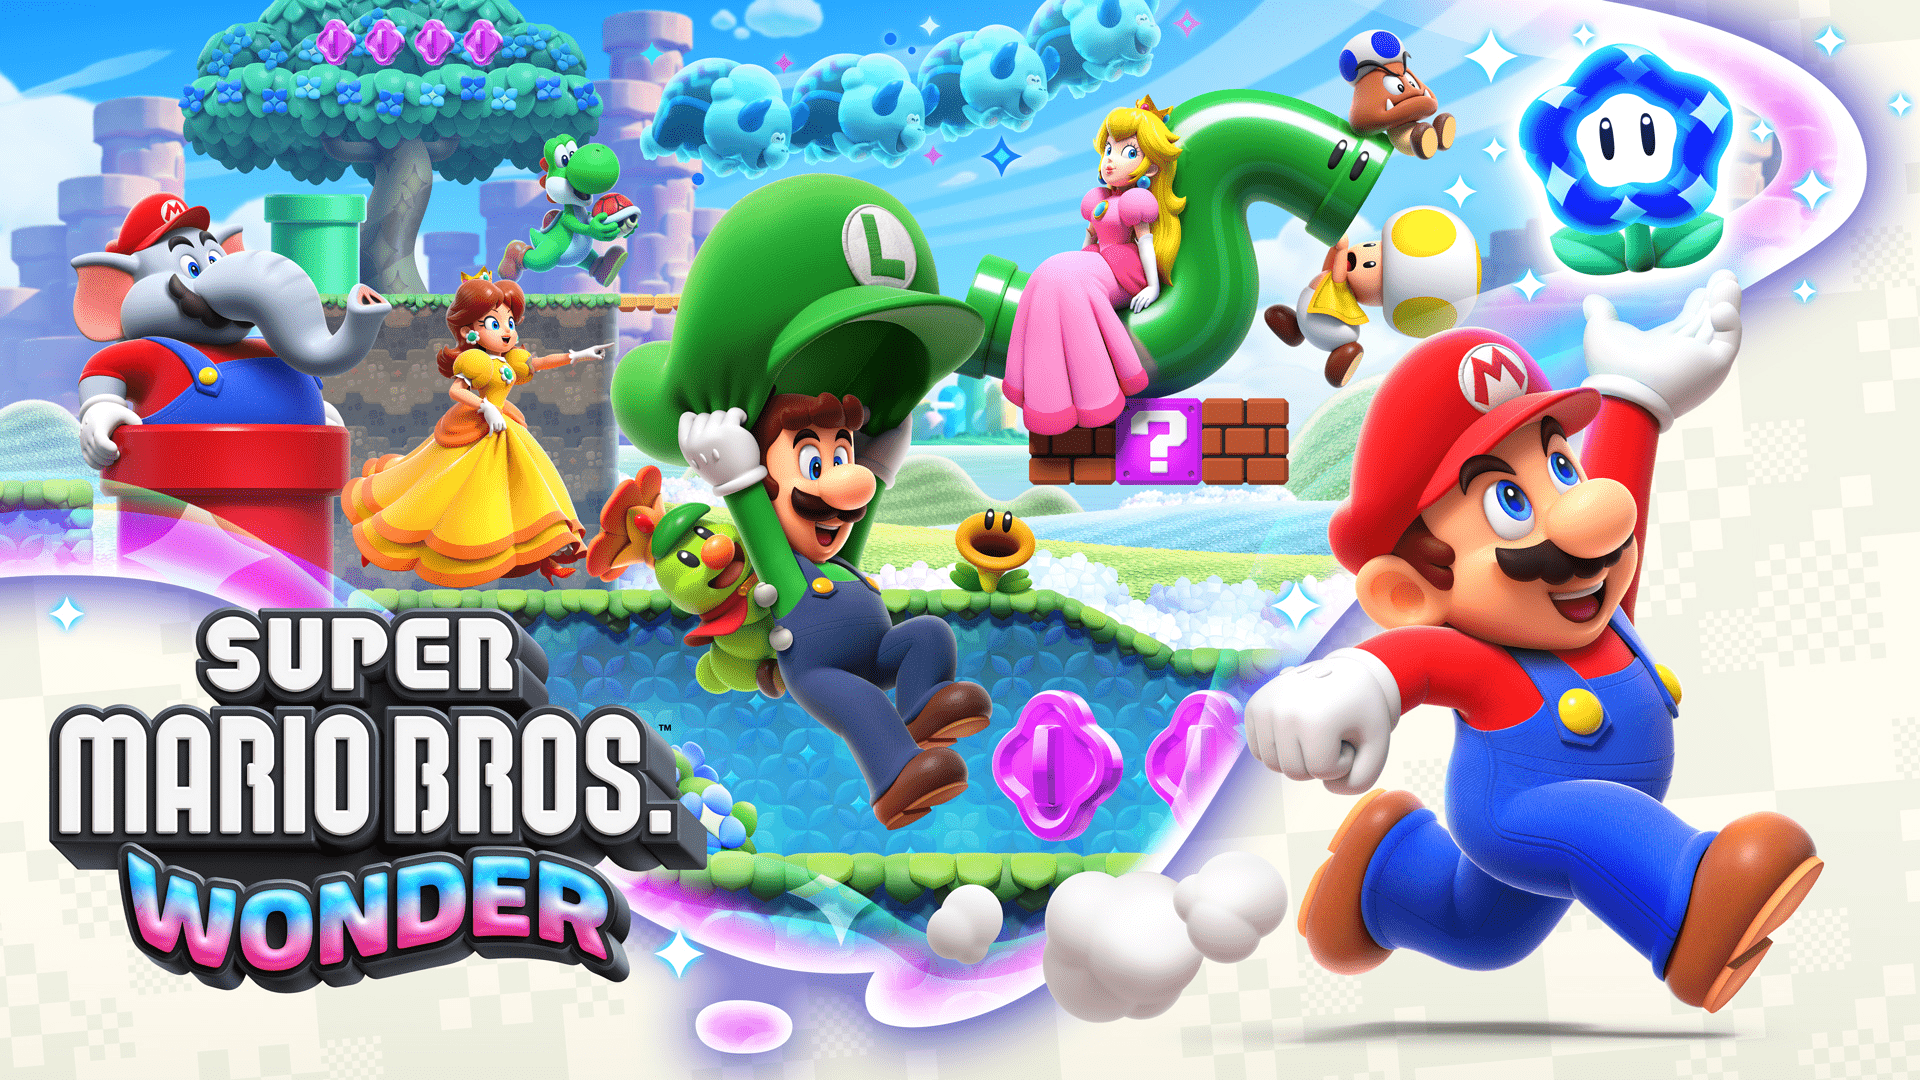 Poster Super Mario Bros Wonder. Imagem de publicidade.